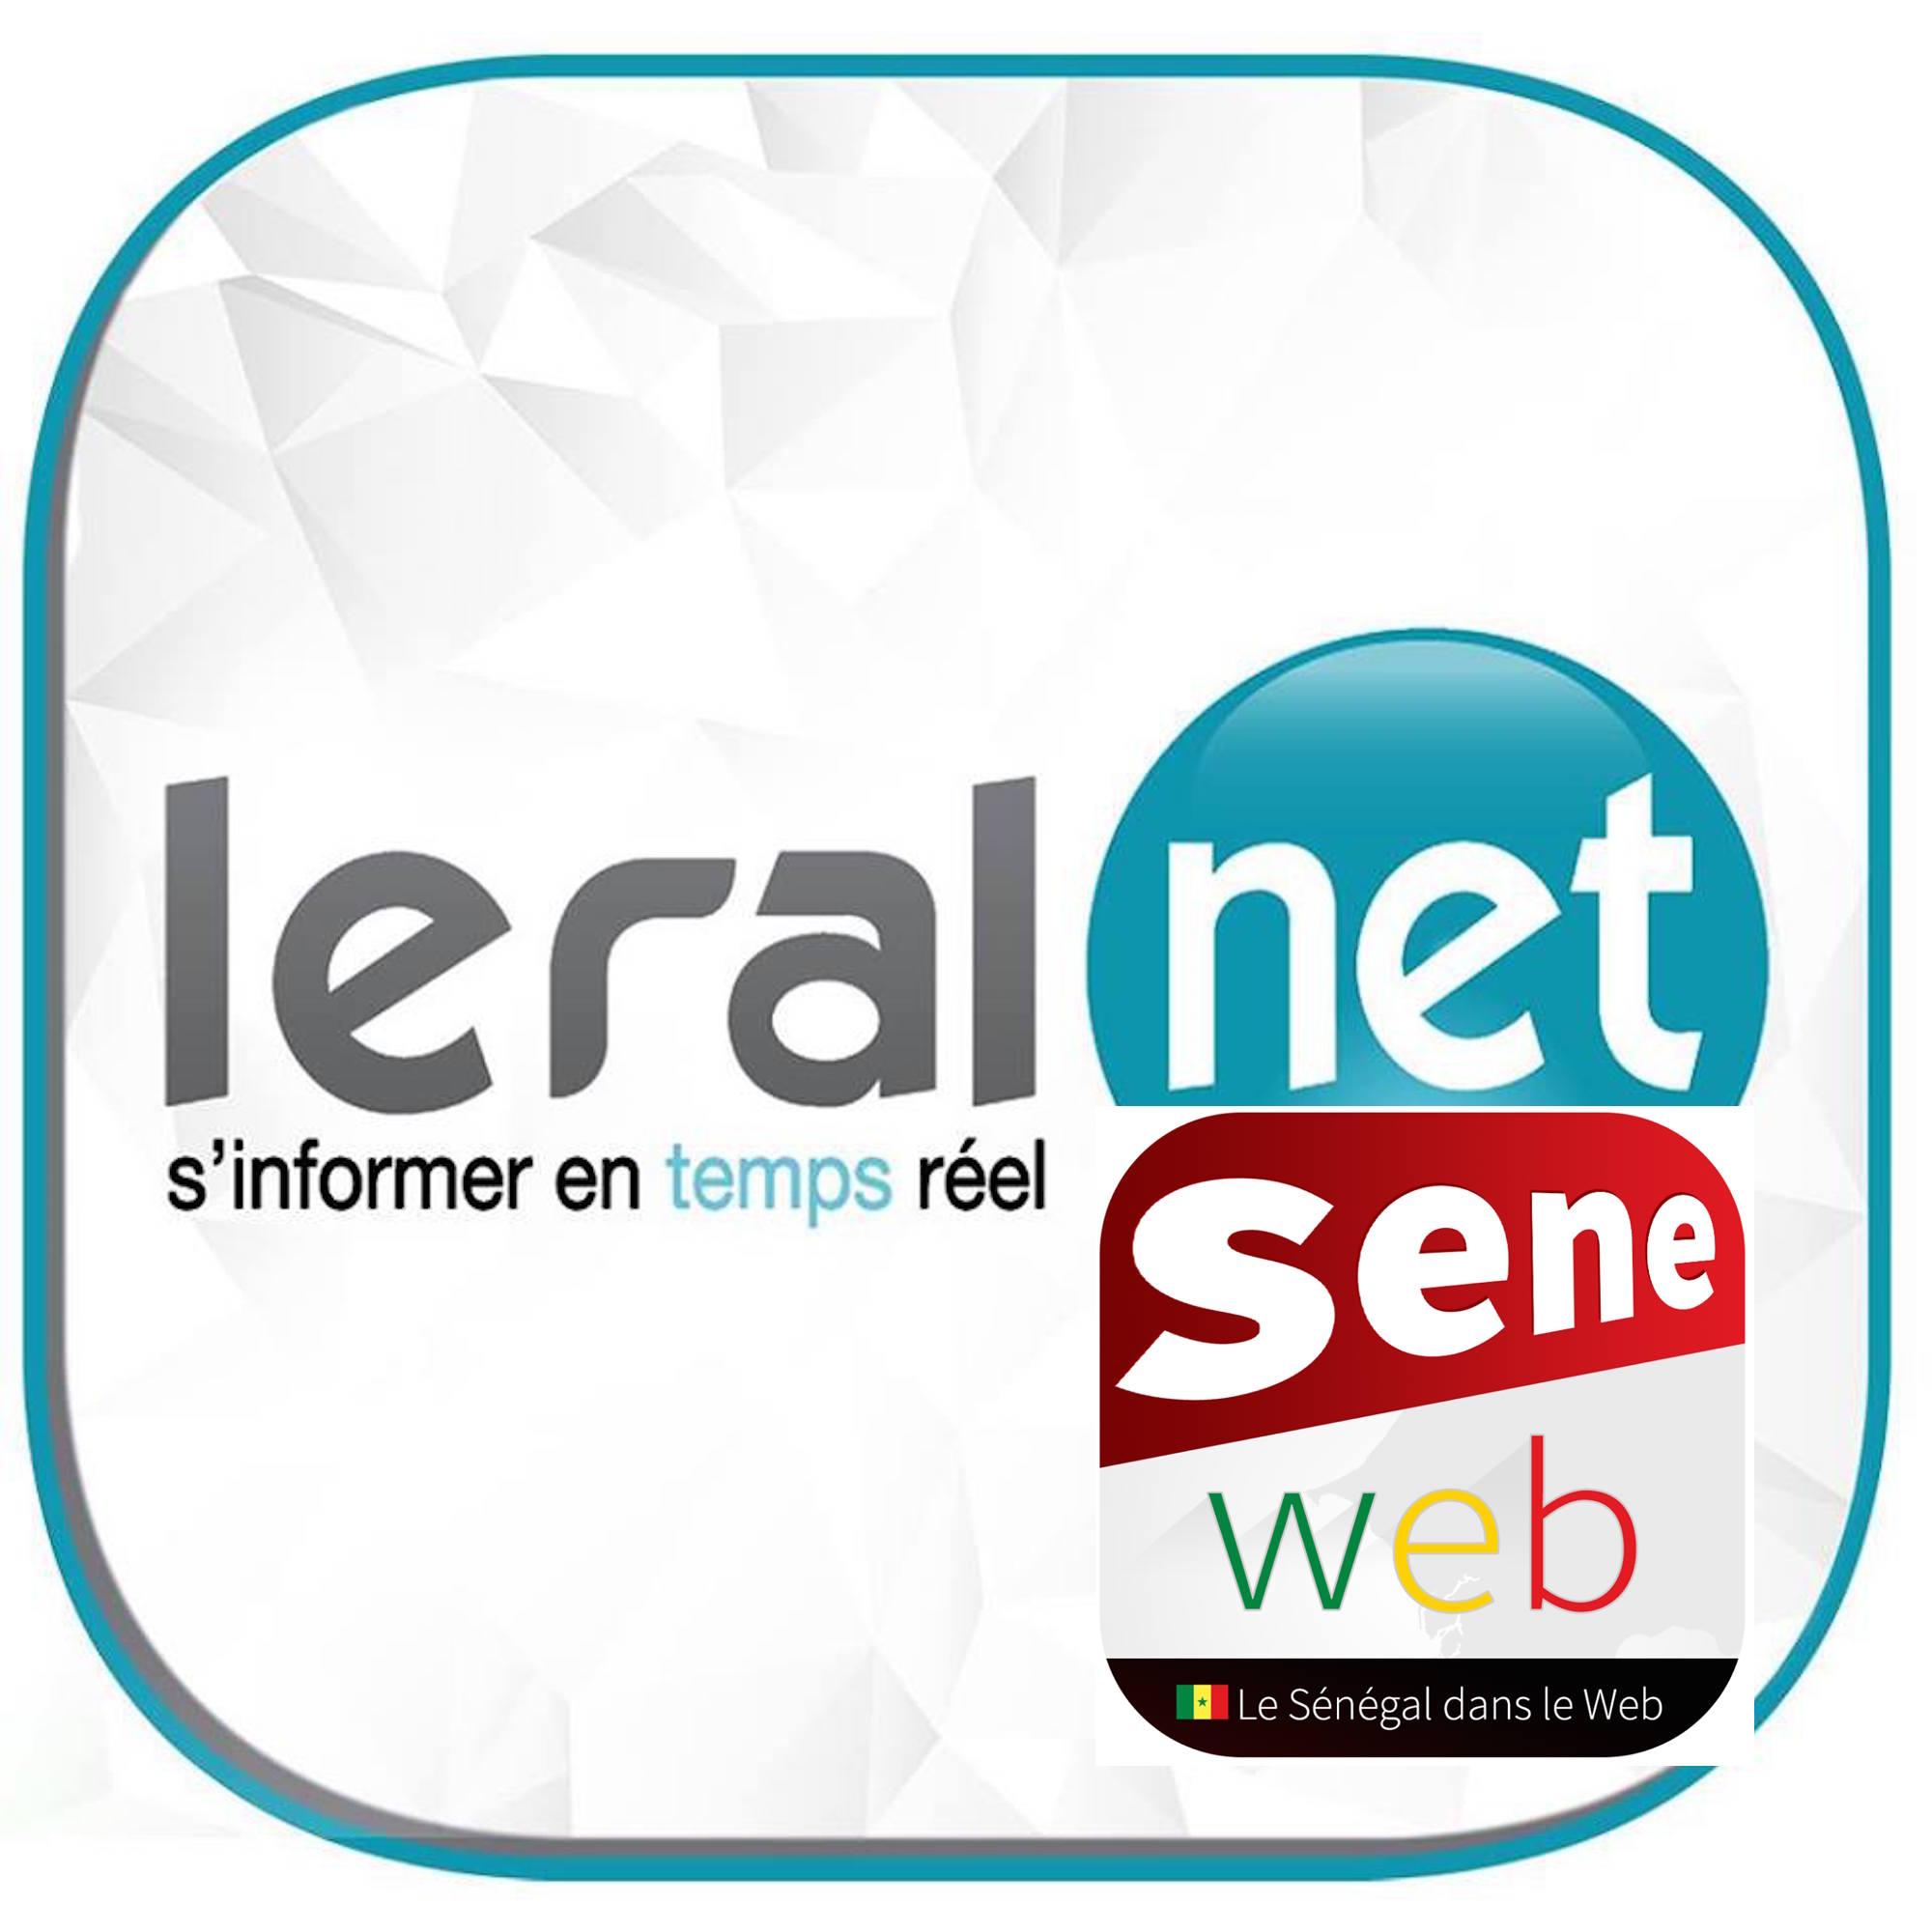 Leral.net, 2ème site d'informations le plus visité au Sénégal, les sites pornographiques très appréciés (Classement Similarweb)